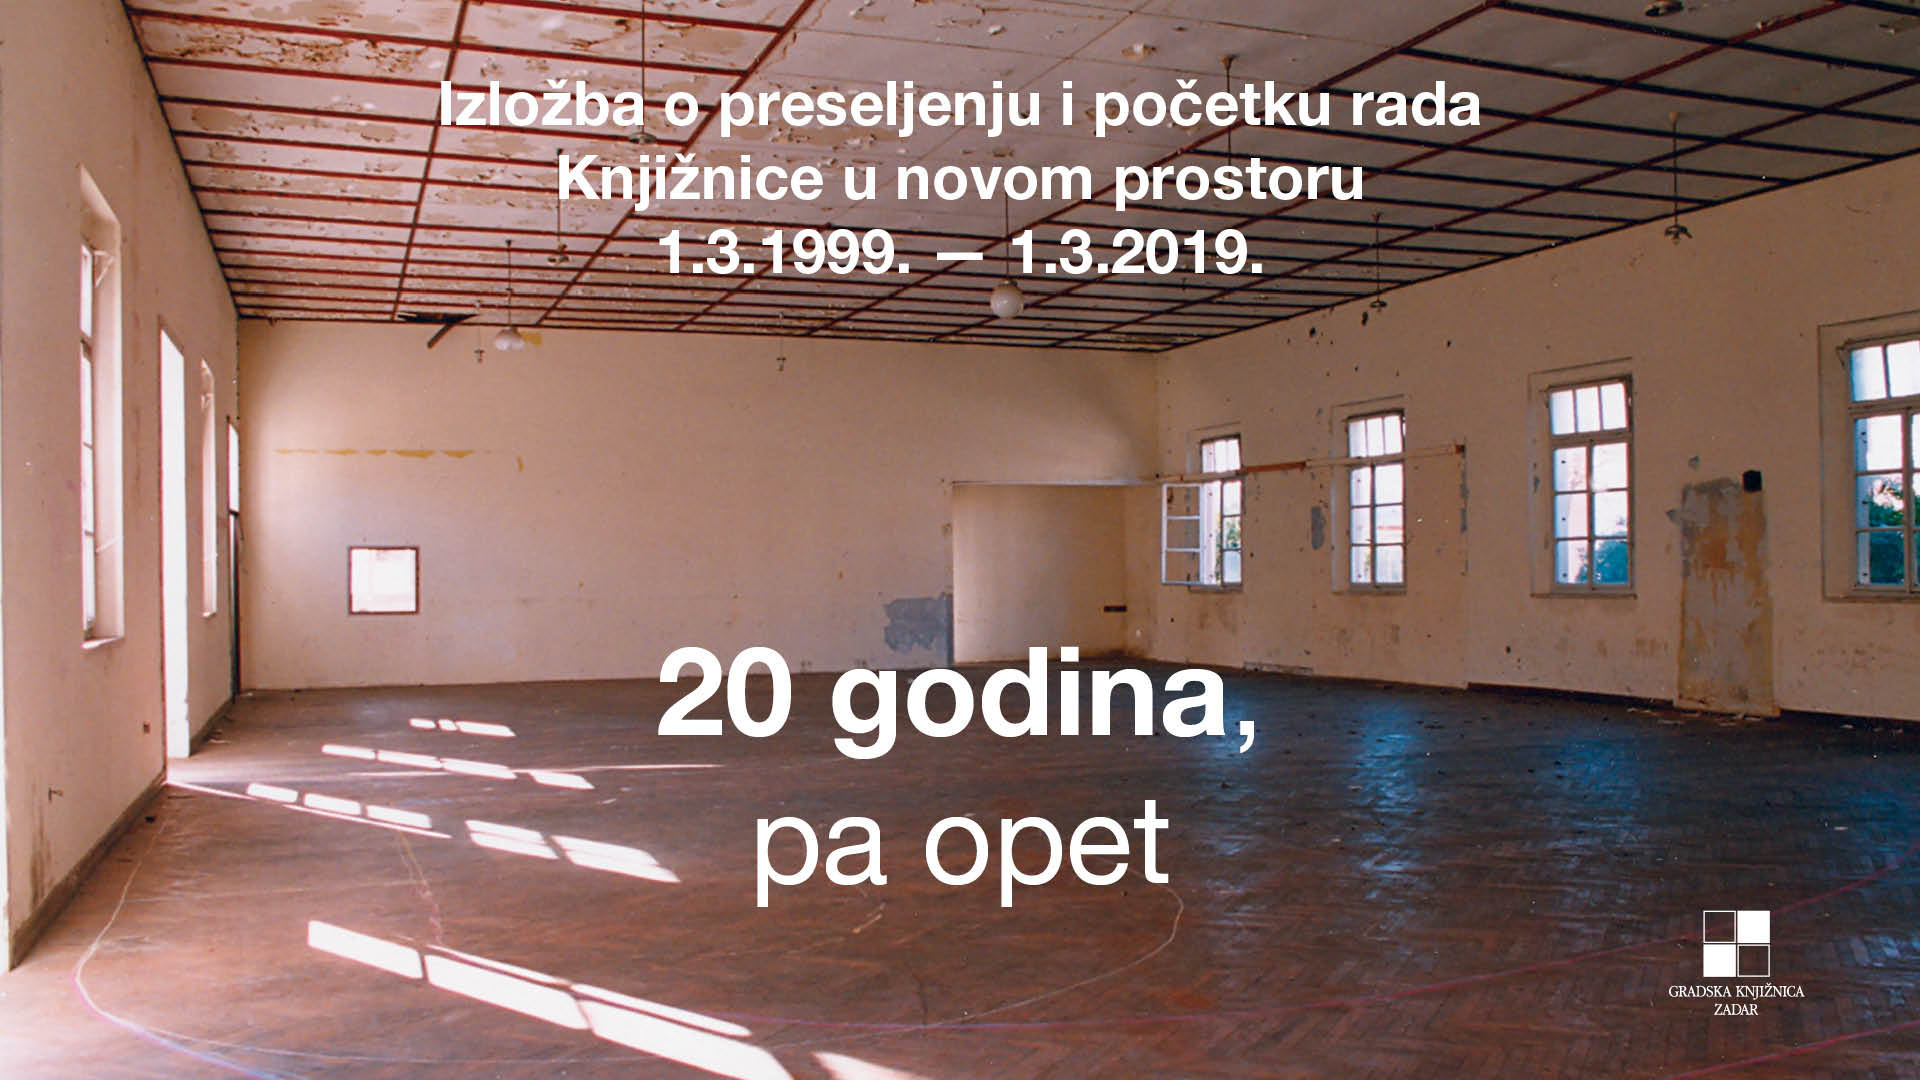 20 godina pa opet: Izložba o preseljenju i početku rada Knjižnice u novom prostoru (1.3.1999. - 1.3.2019.)